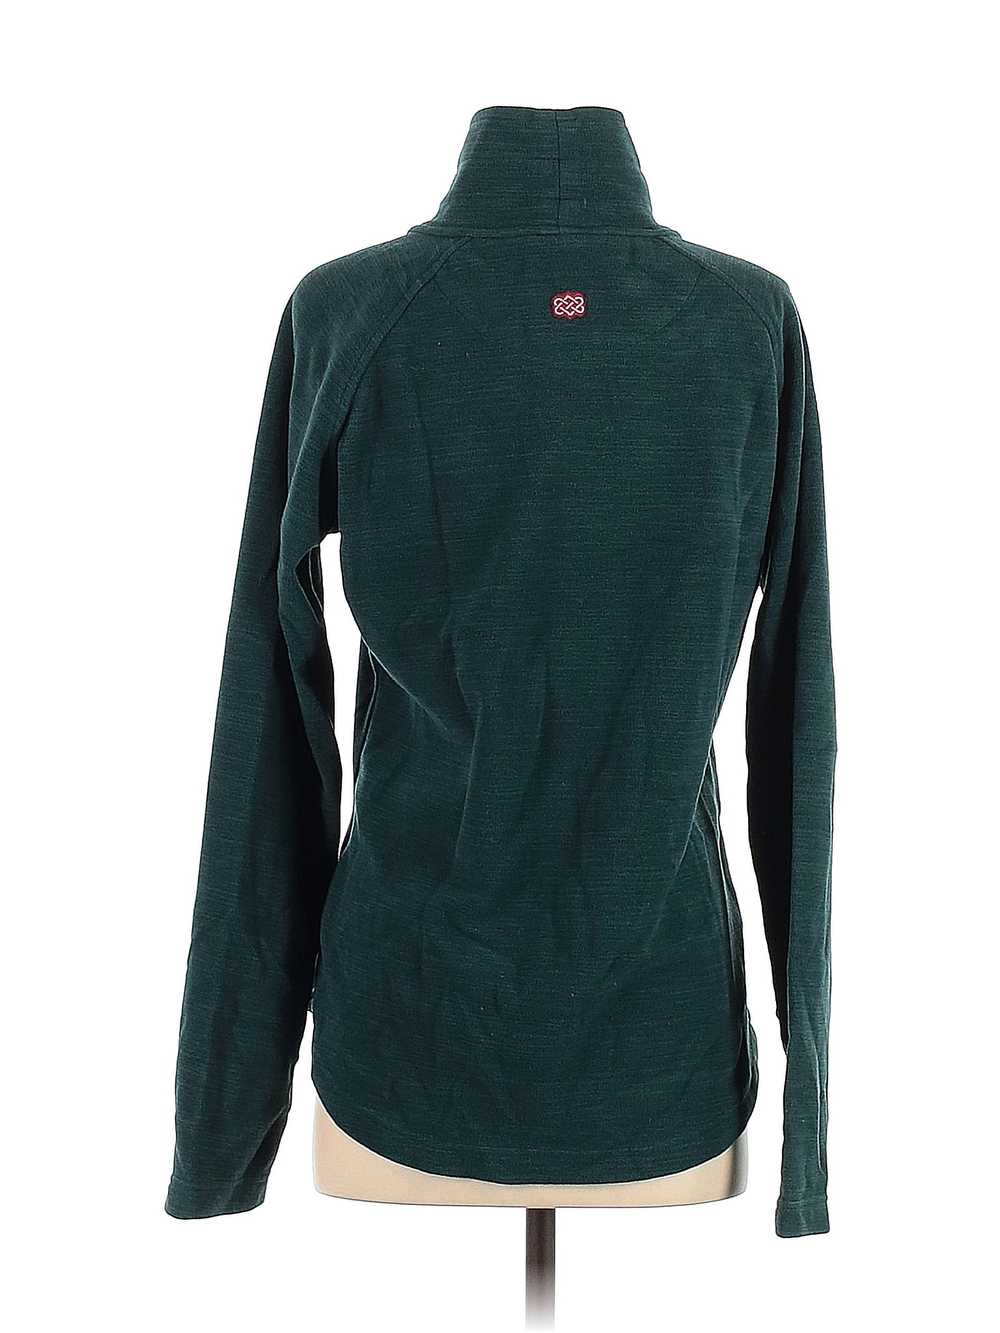 Assorted Brands Women Green Sweatshirt M - image 2